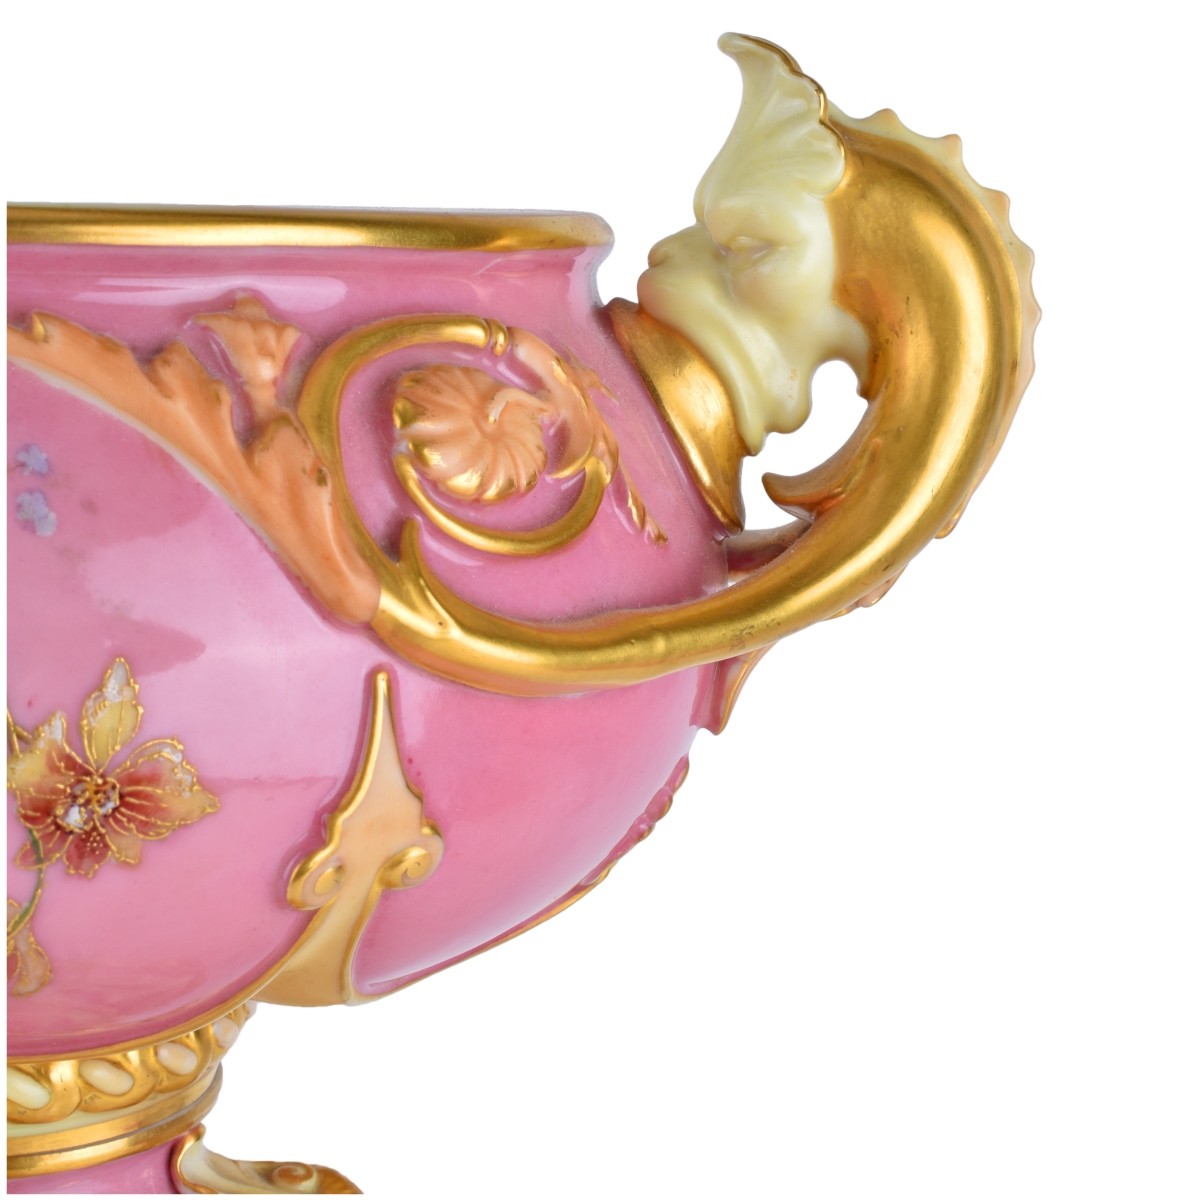 Large Royal Worcester Glazed Porcelain Centerpiece